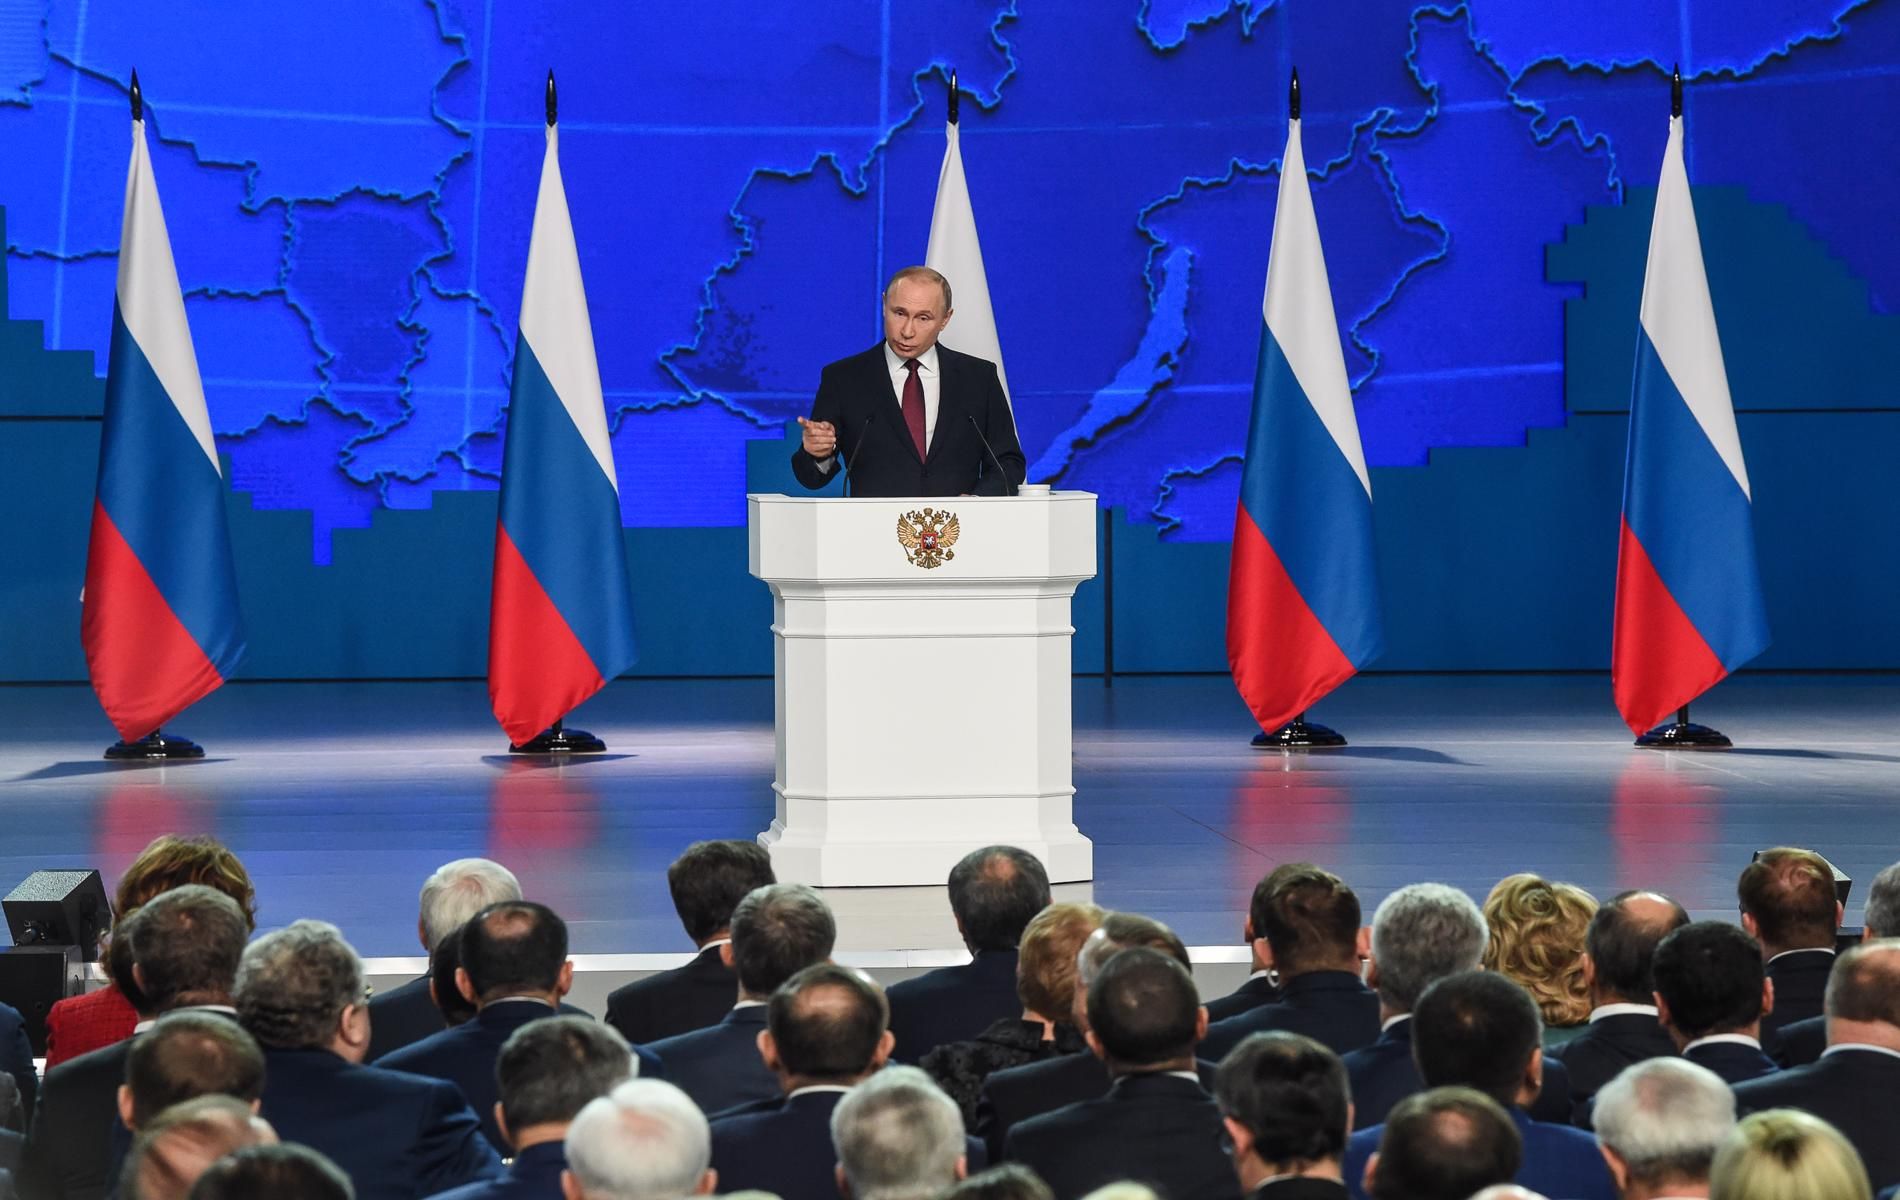 Има спад в интереса и доверието към Путин, пишат руски медии